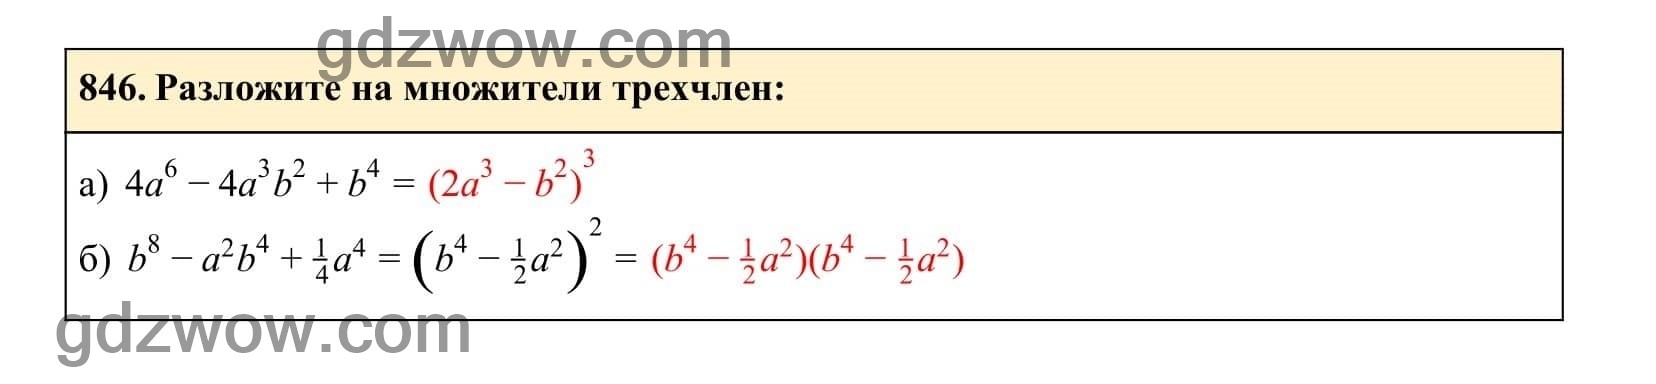 Упражнение 846 - ГДЗ по Алгебре 7 класс Учебник Макарычев (решебник) - GDZwow